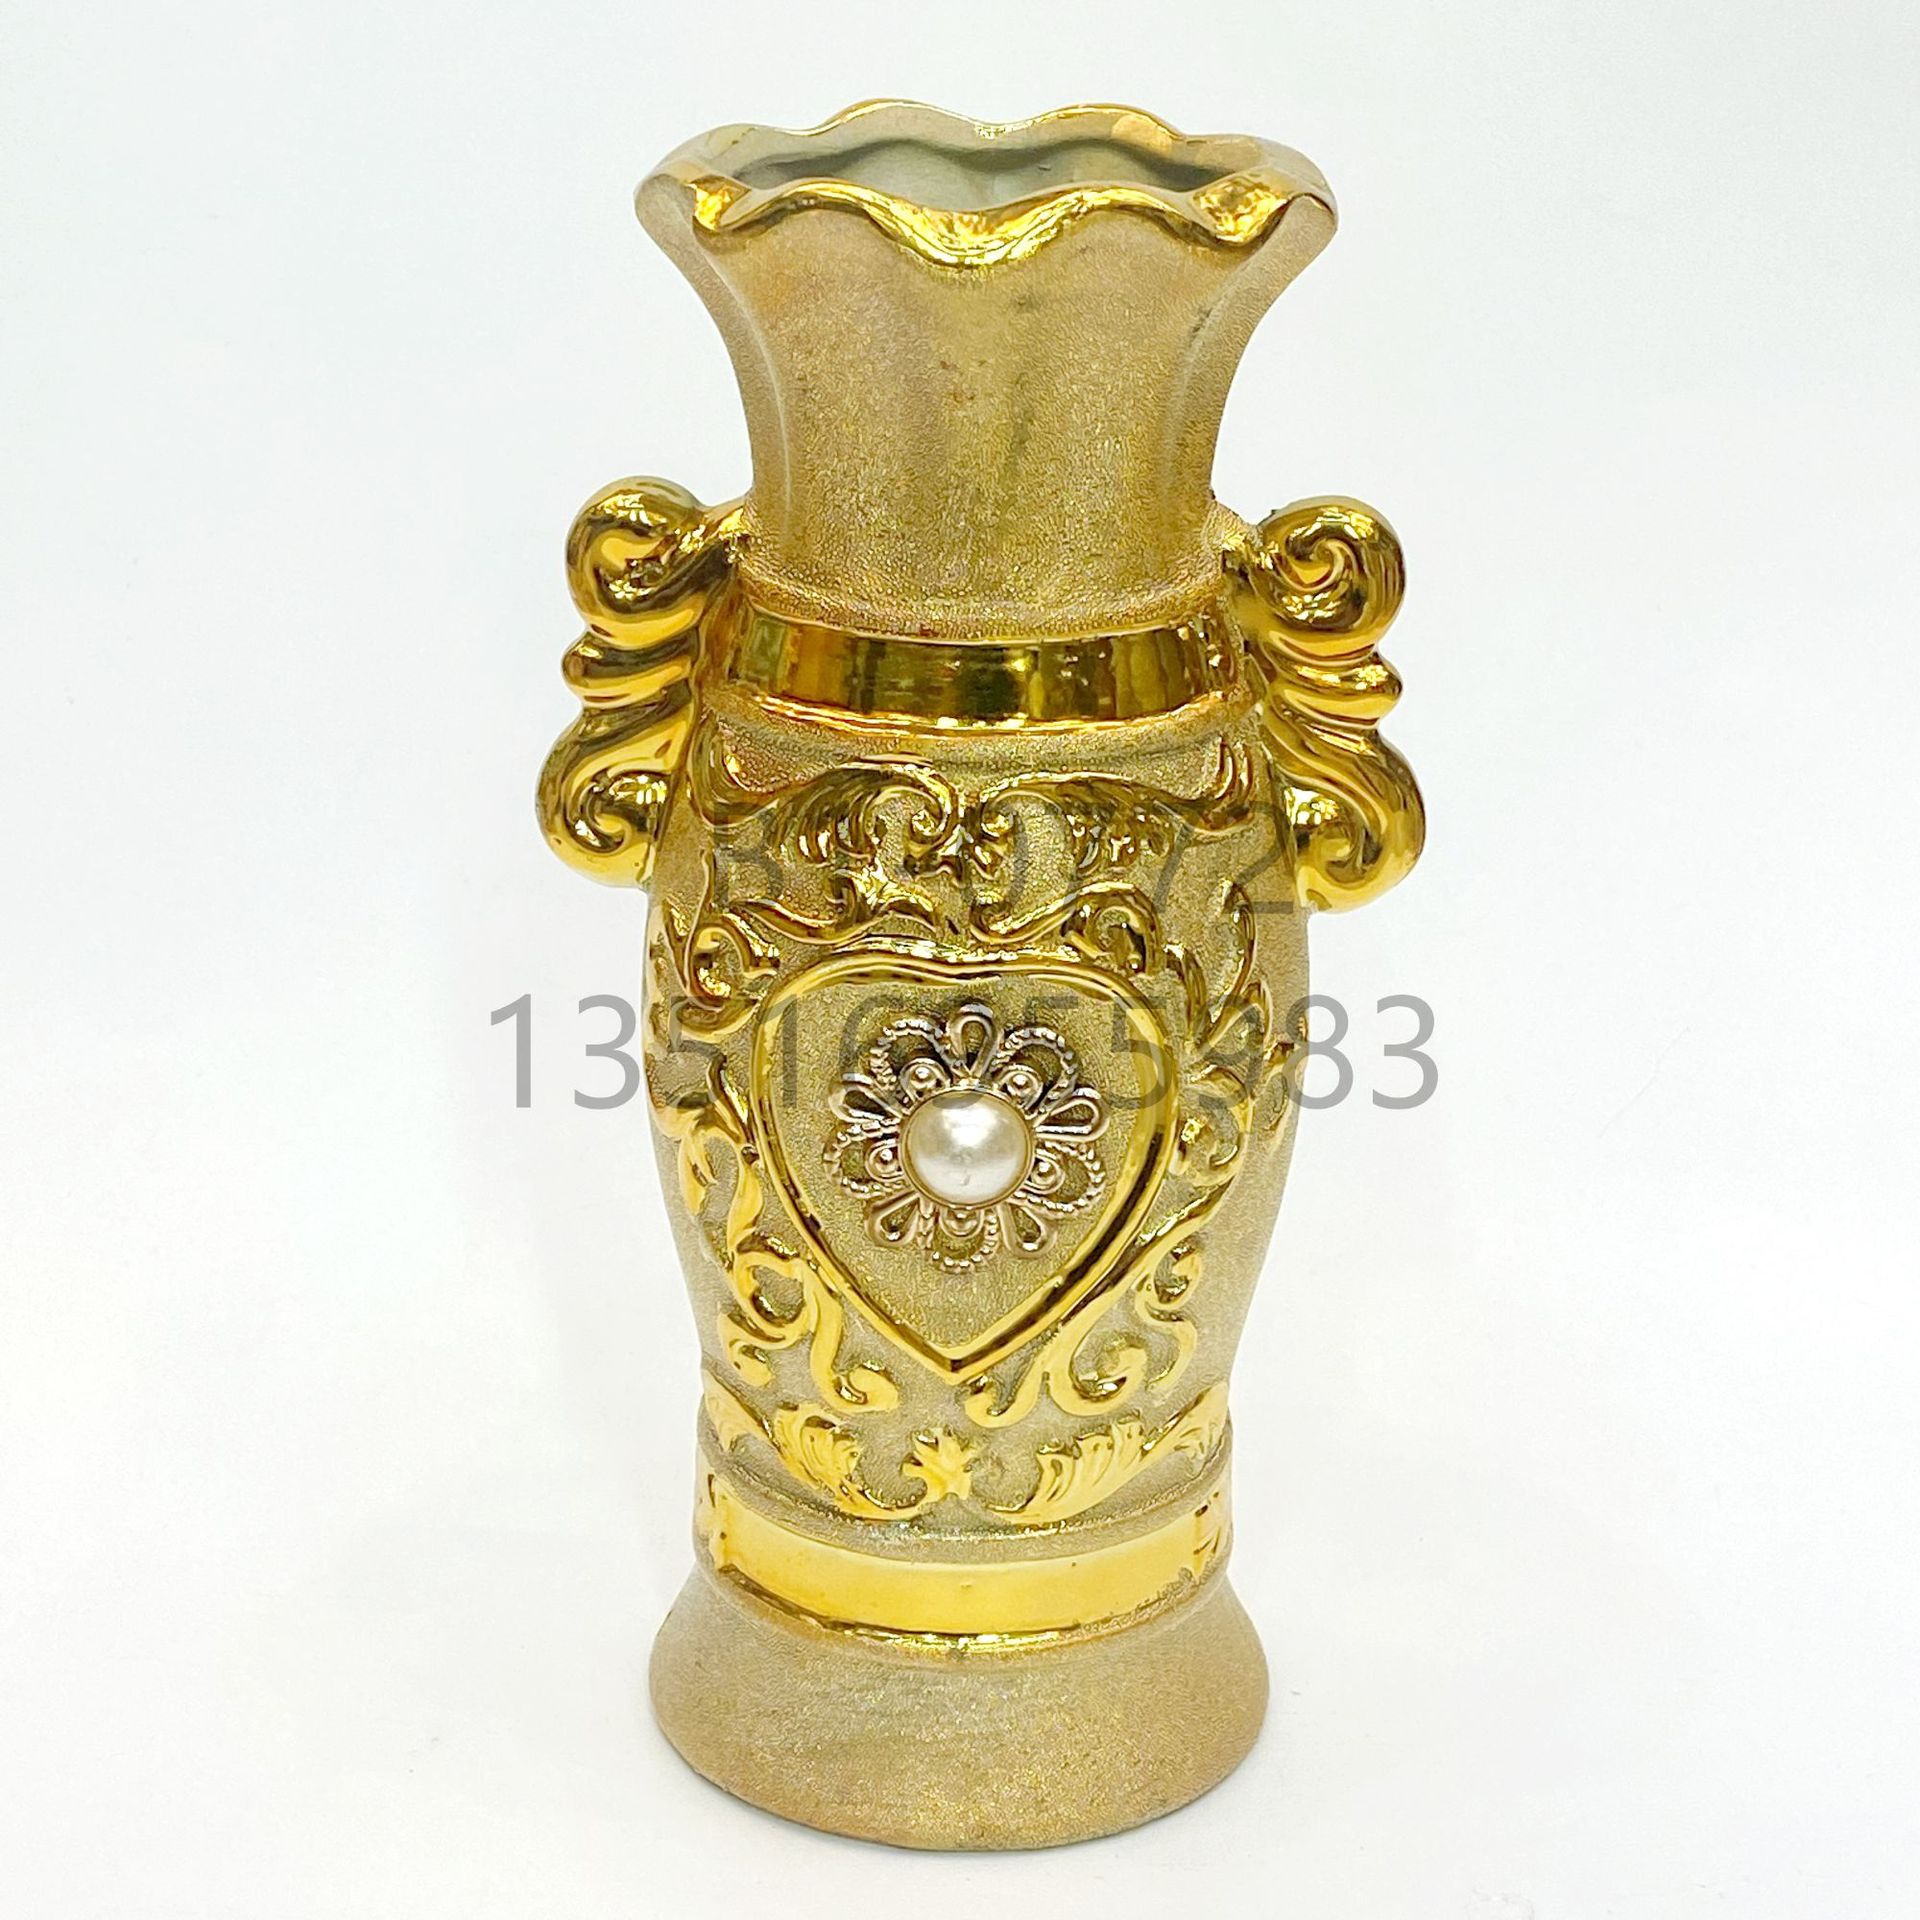 砂金镶嵌珠子陶瓷花瓶 10寸25厘米高档现代客厅家居摆件花盆批发